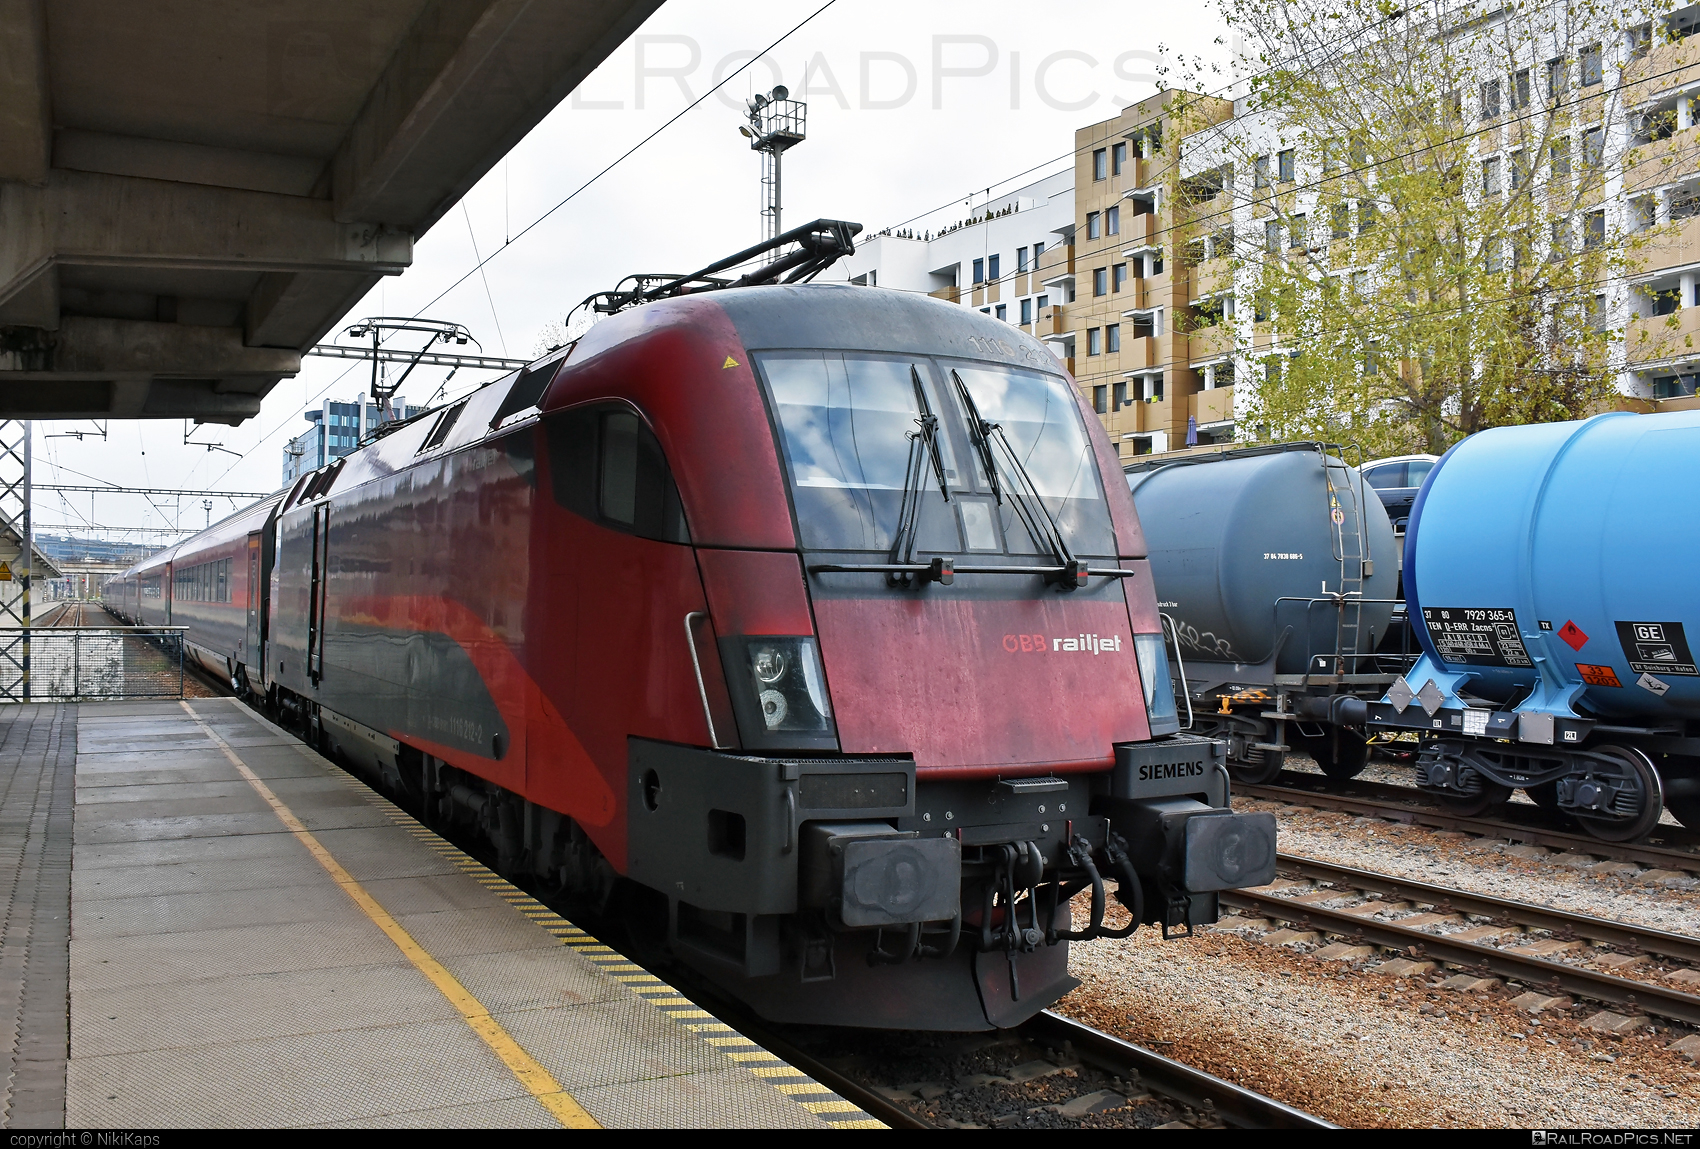 Siemens ES 64 U2 - 1116 212 operated by Österreichische Bundesbahnen #es64 #es64u2 #eurosprinter #obb #obbrailjet #osterreichischebundesbahnen #railjet #siemens #siemensEs64 #siemensEs64u2 #siemenstaurus #taurus #tauruslocomotive